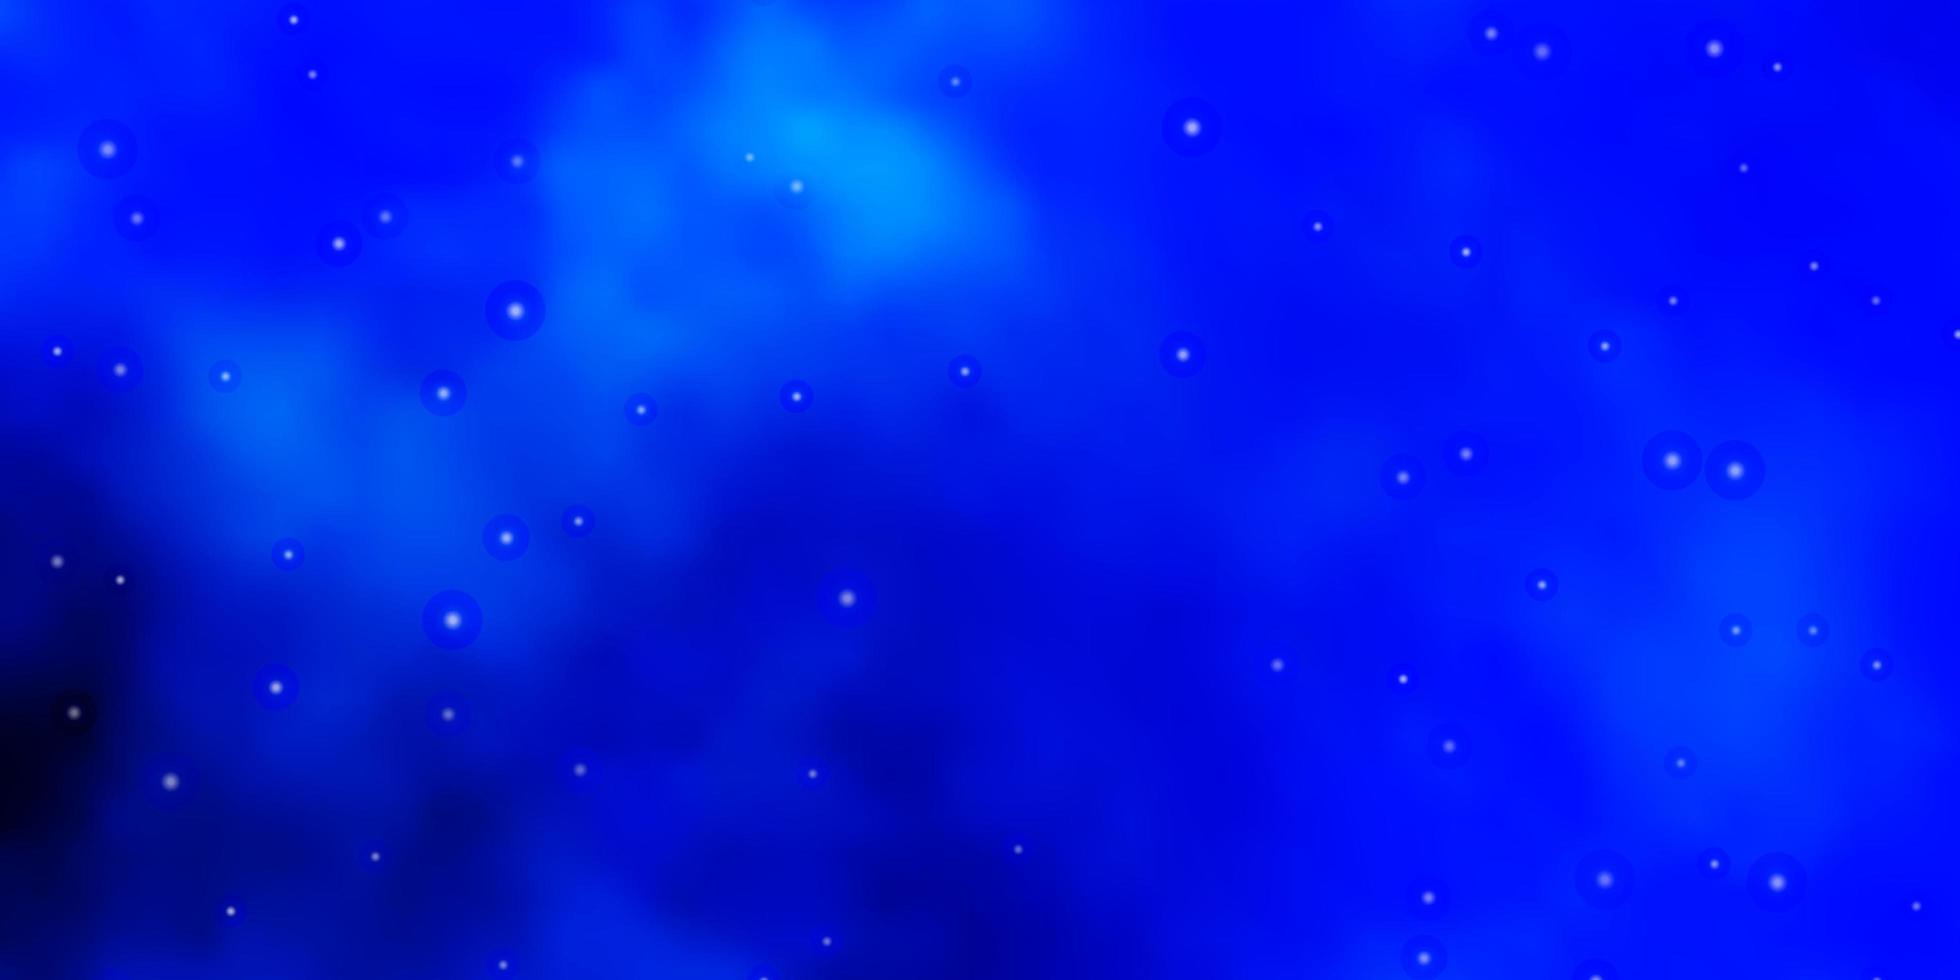 hellblauer Vektorhintergrund mit bunten Sternen. verwischen Sie dekoratives Design im einfachen Stil mit Sternen. Muster für Neujahrsanzeige, Broschüren. vektor